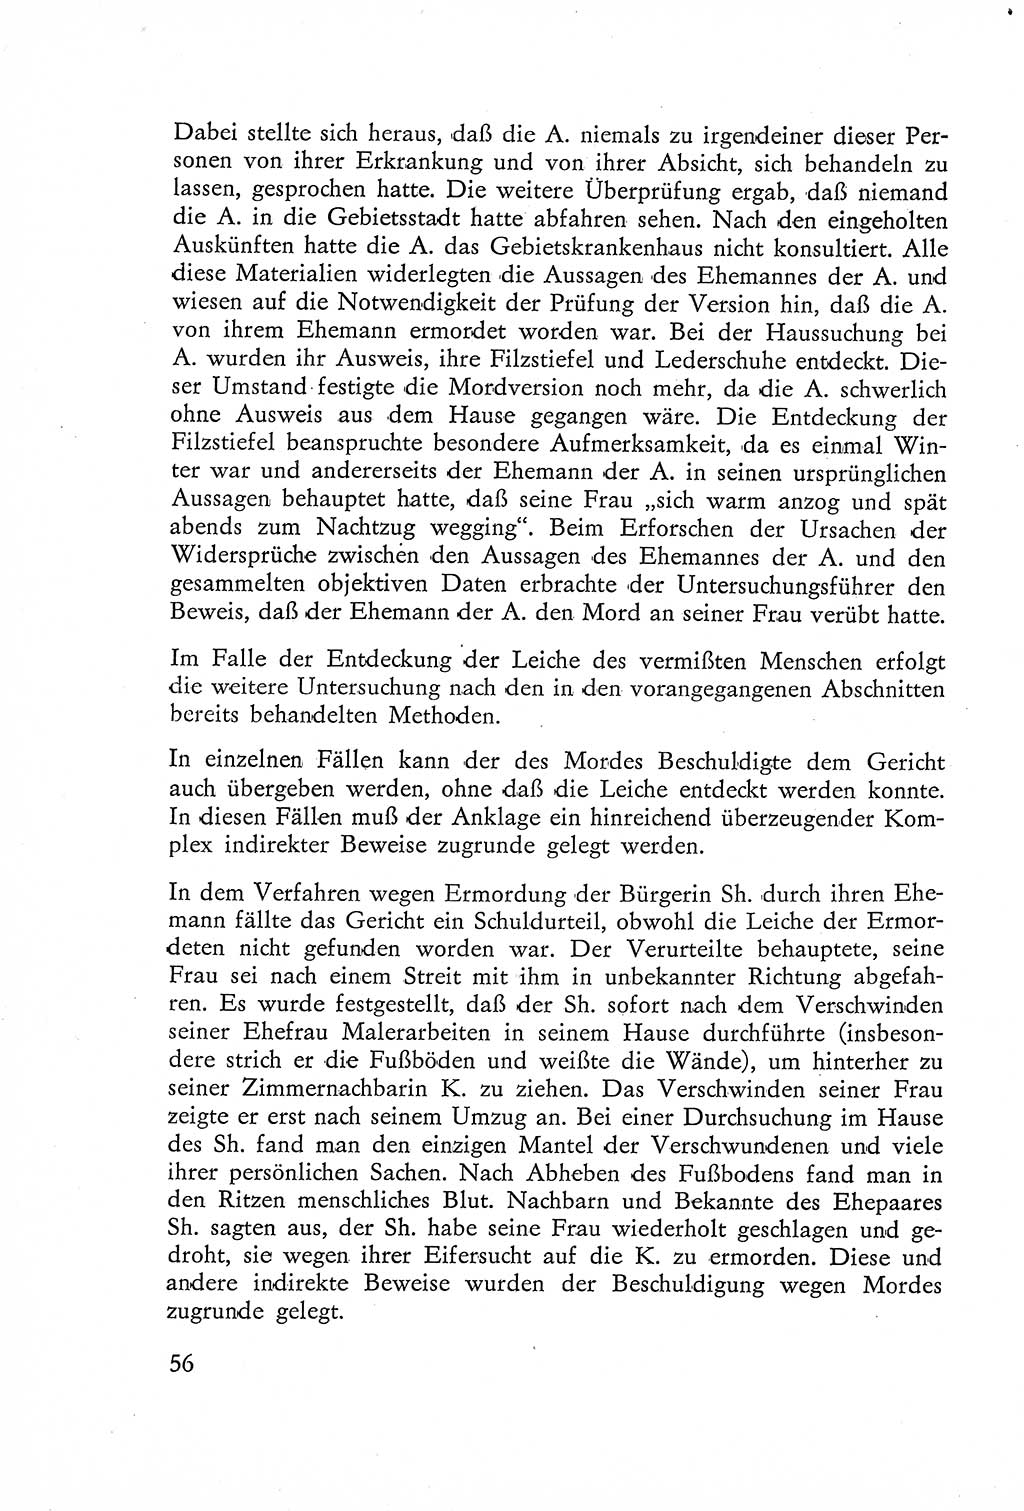 Die Untersuchung einzelner Verbrechensarten [Deutsche Demokratische Republik (DDR)] 1960, Seite 56 (Unters. Verbr.-Art. DDR 1960, S. 56)